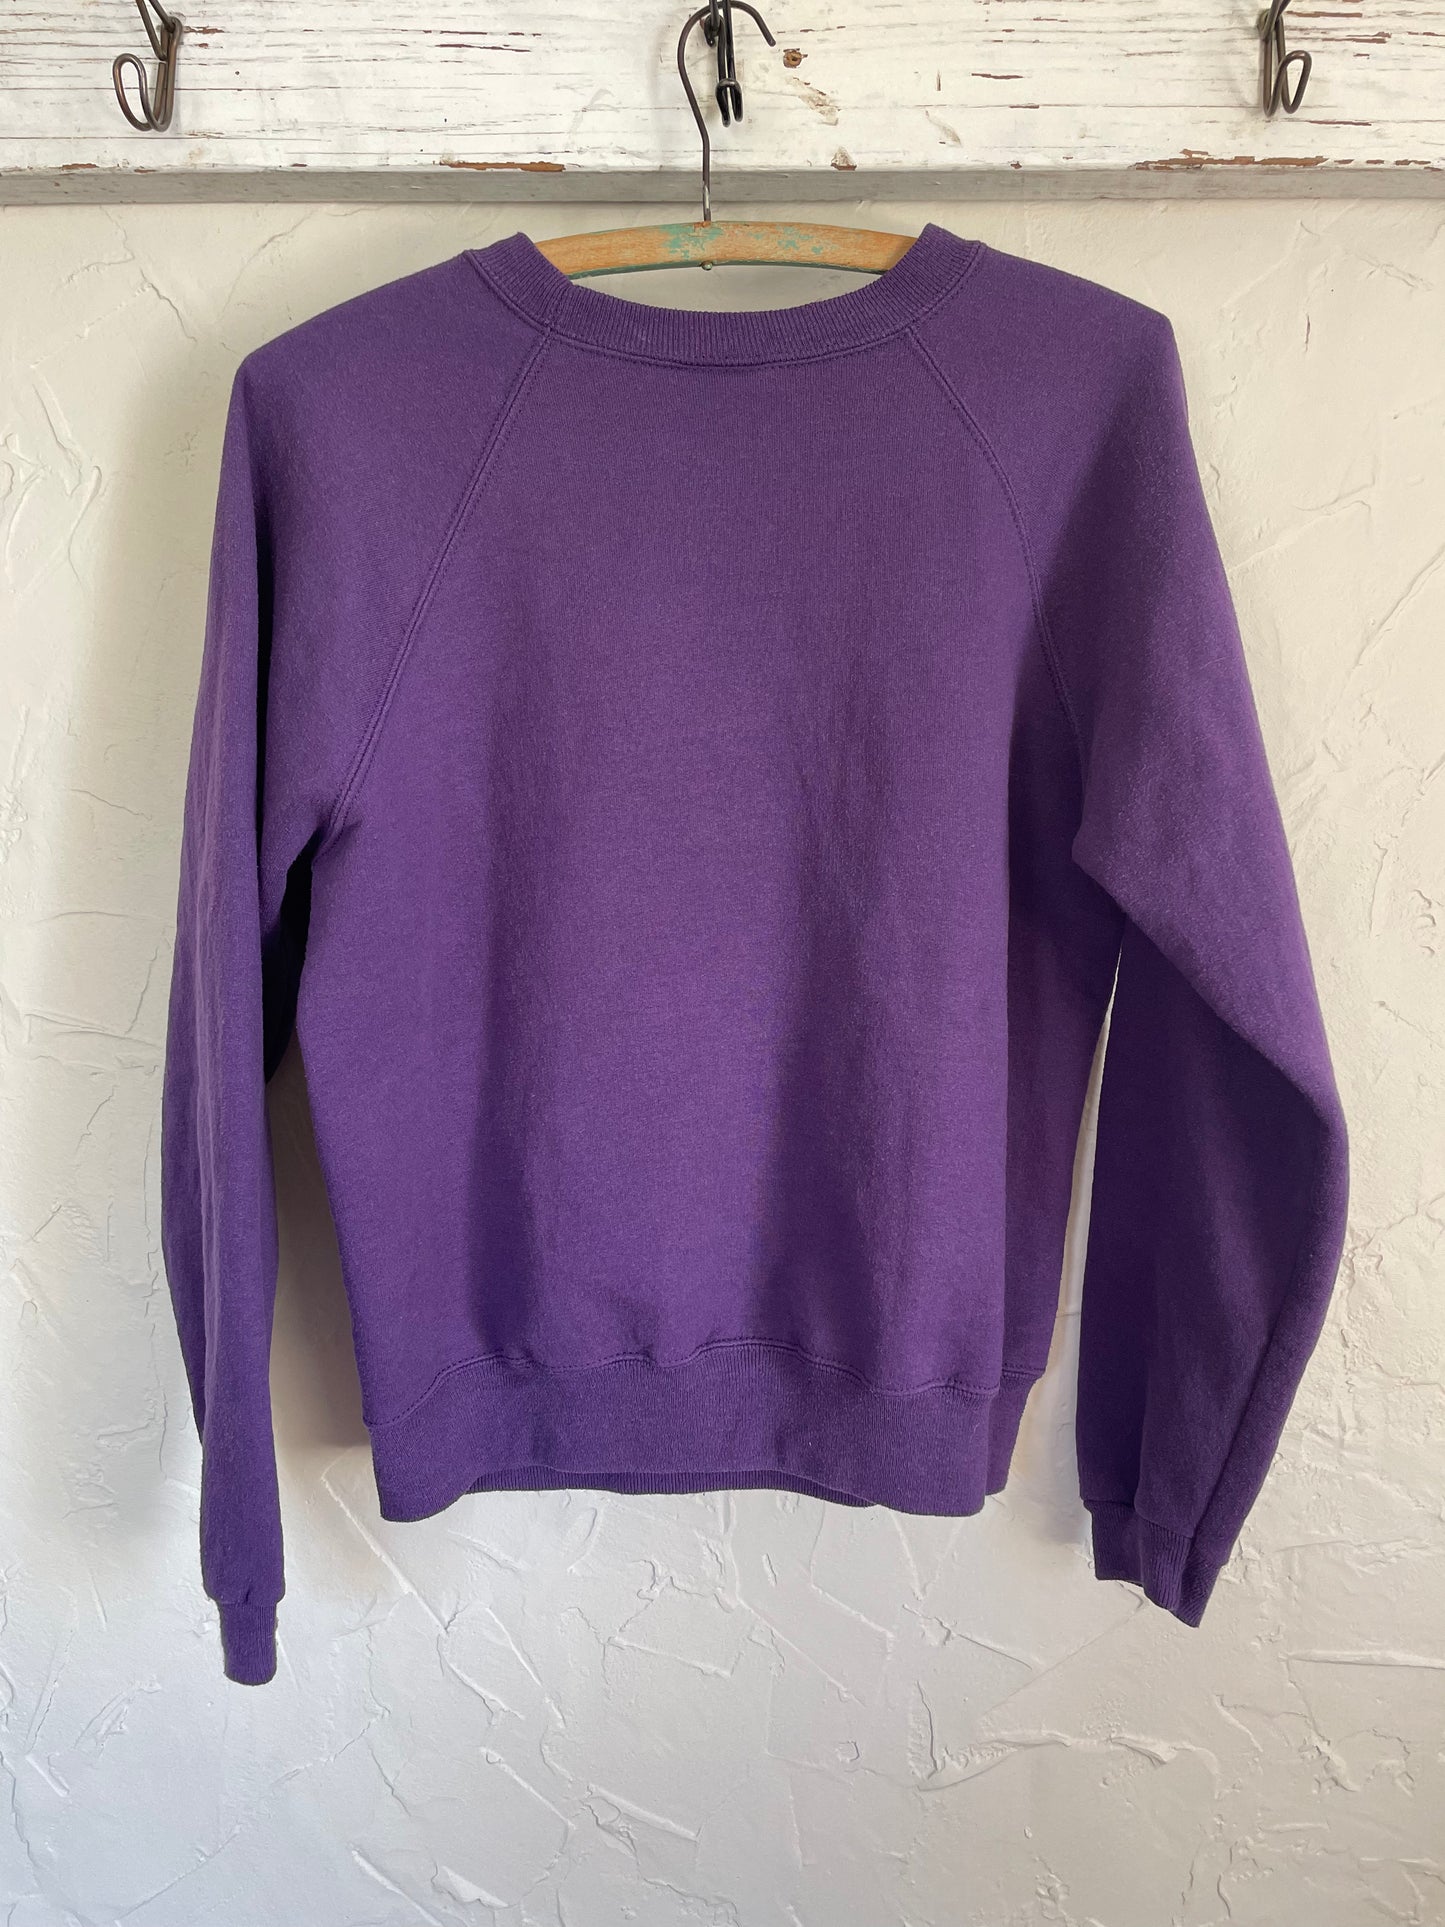 90s Blank Purple Sweatshirt